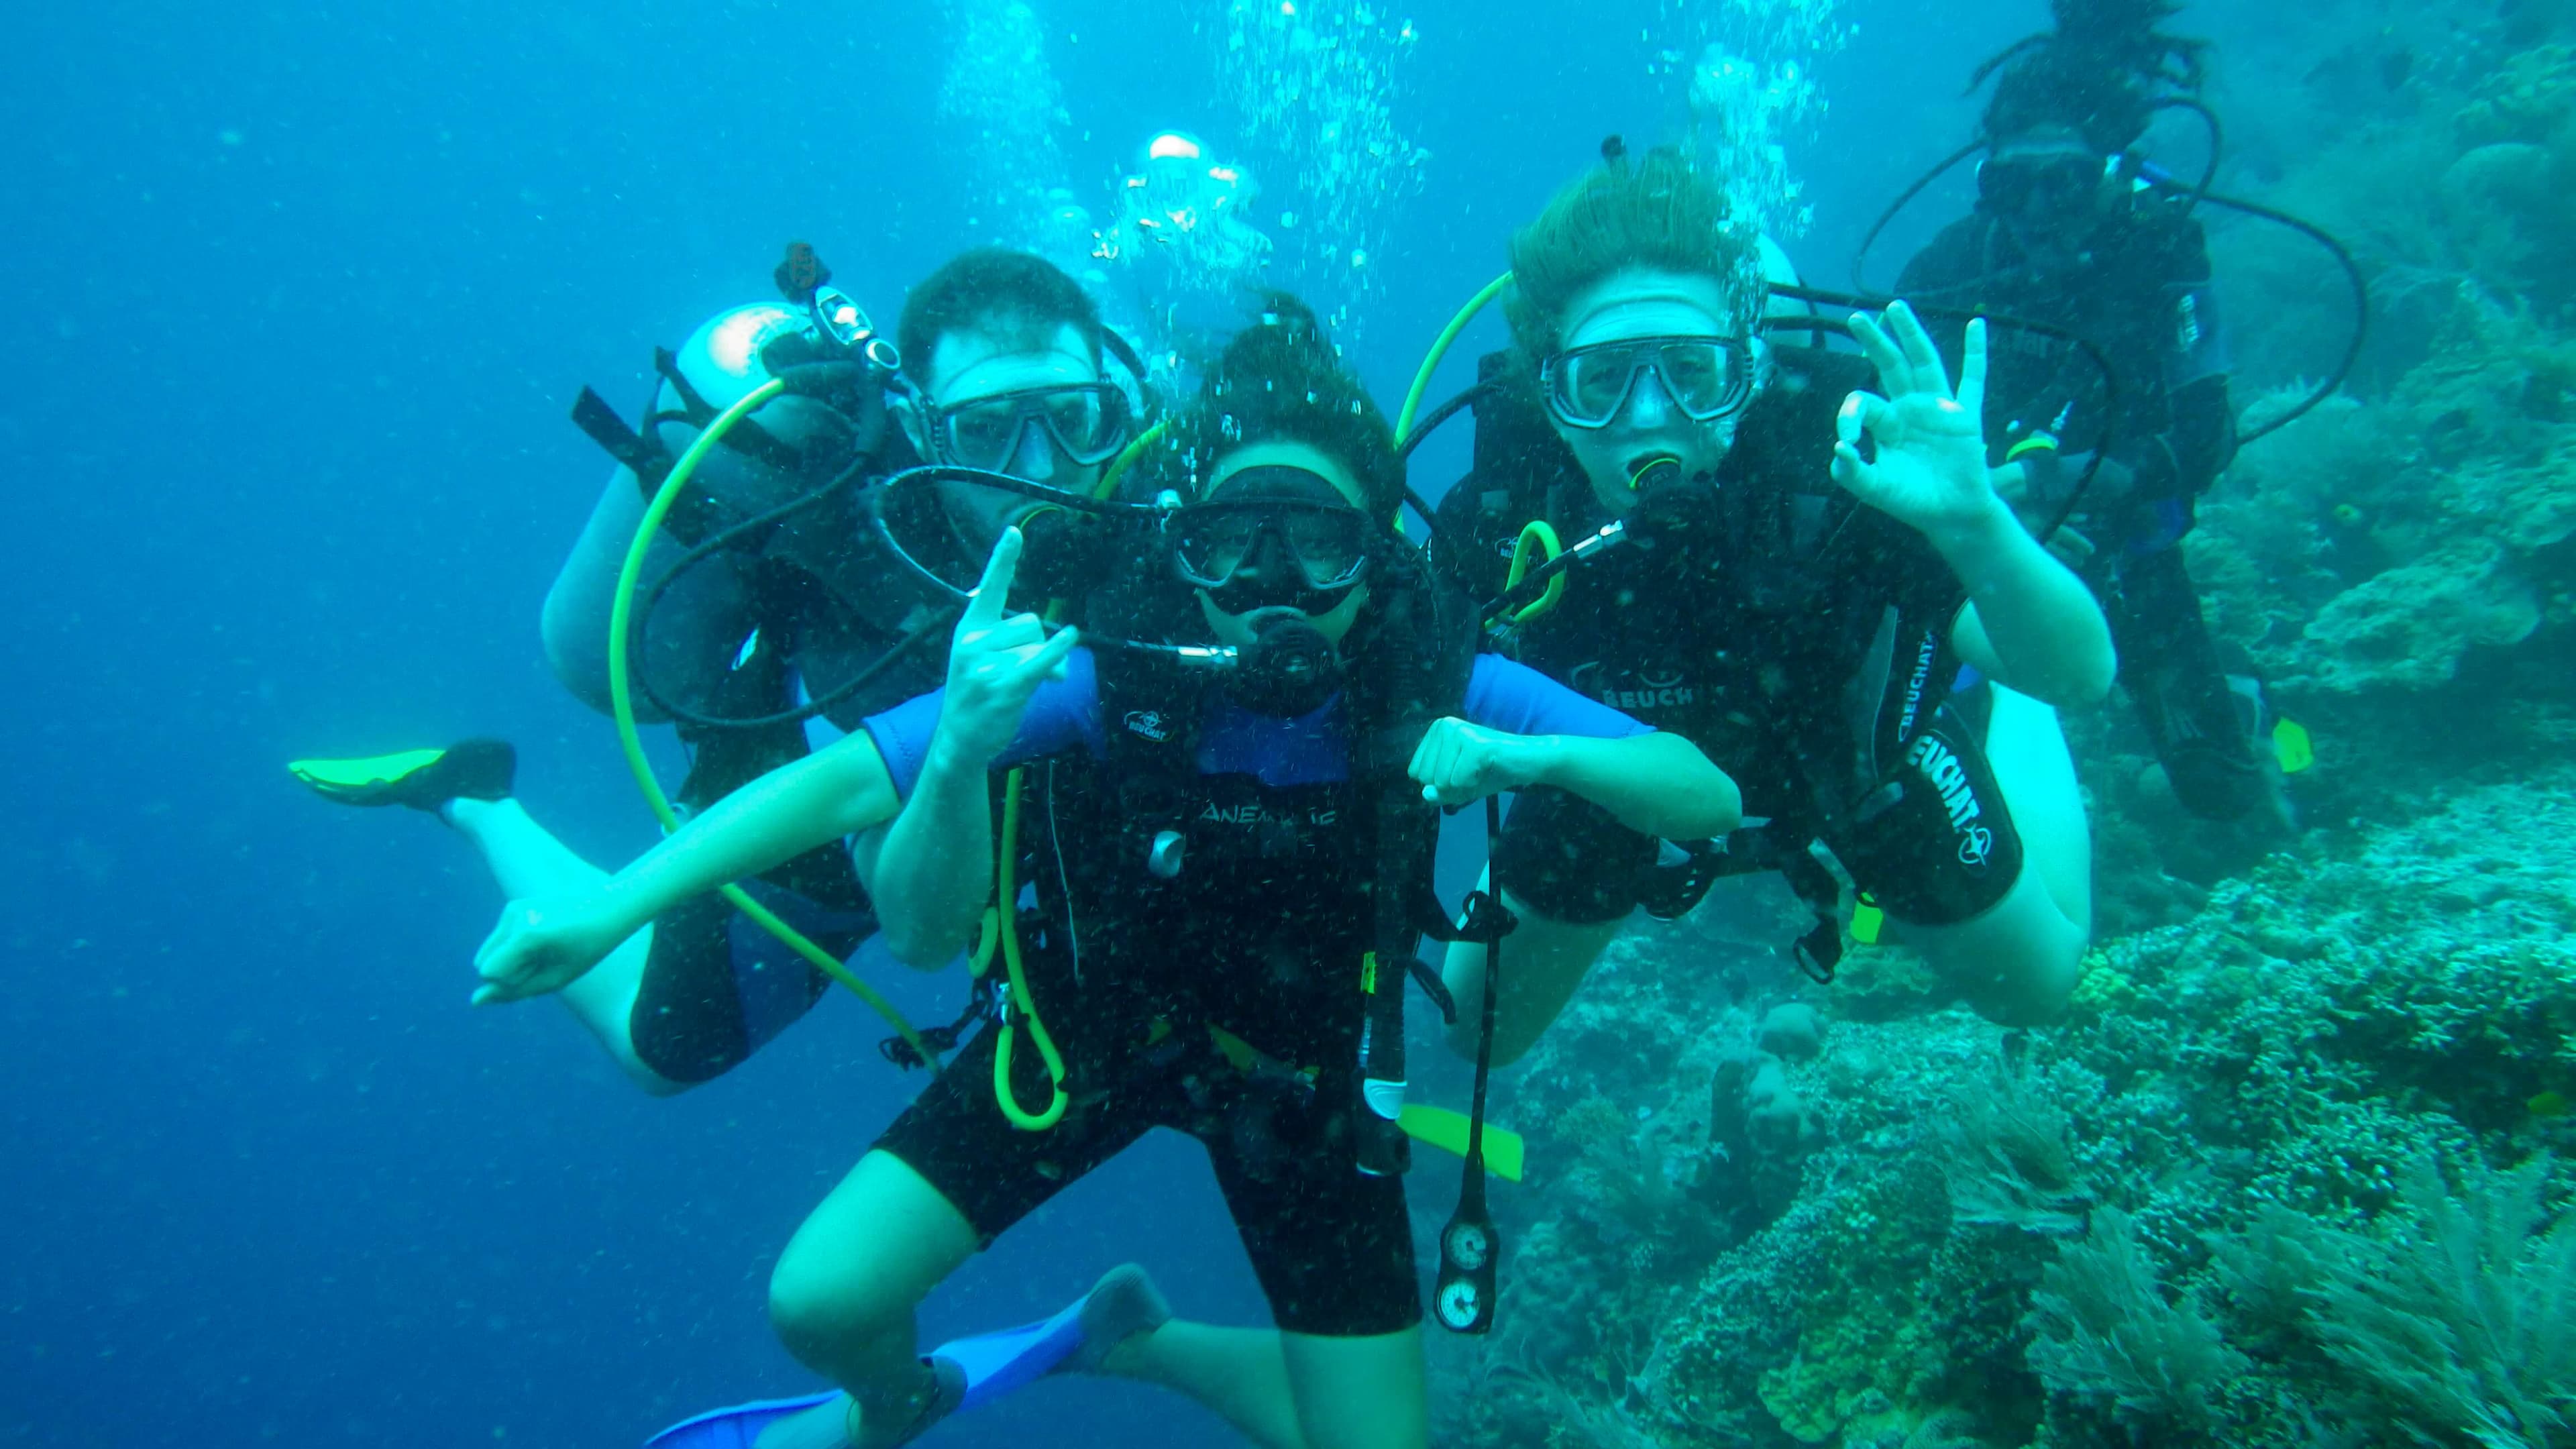 مجموعة غواصين تستمتع بجمال ما تحت الماء في ترينكومالي سريلانكا